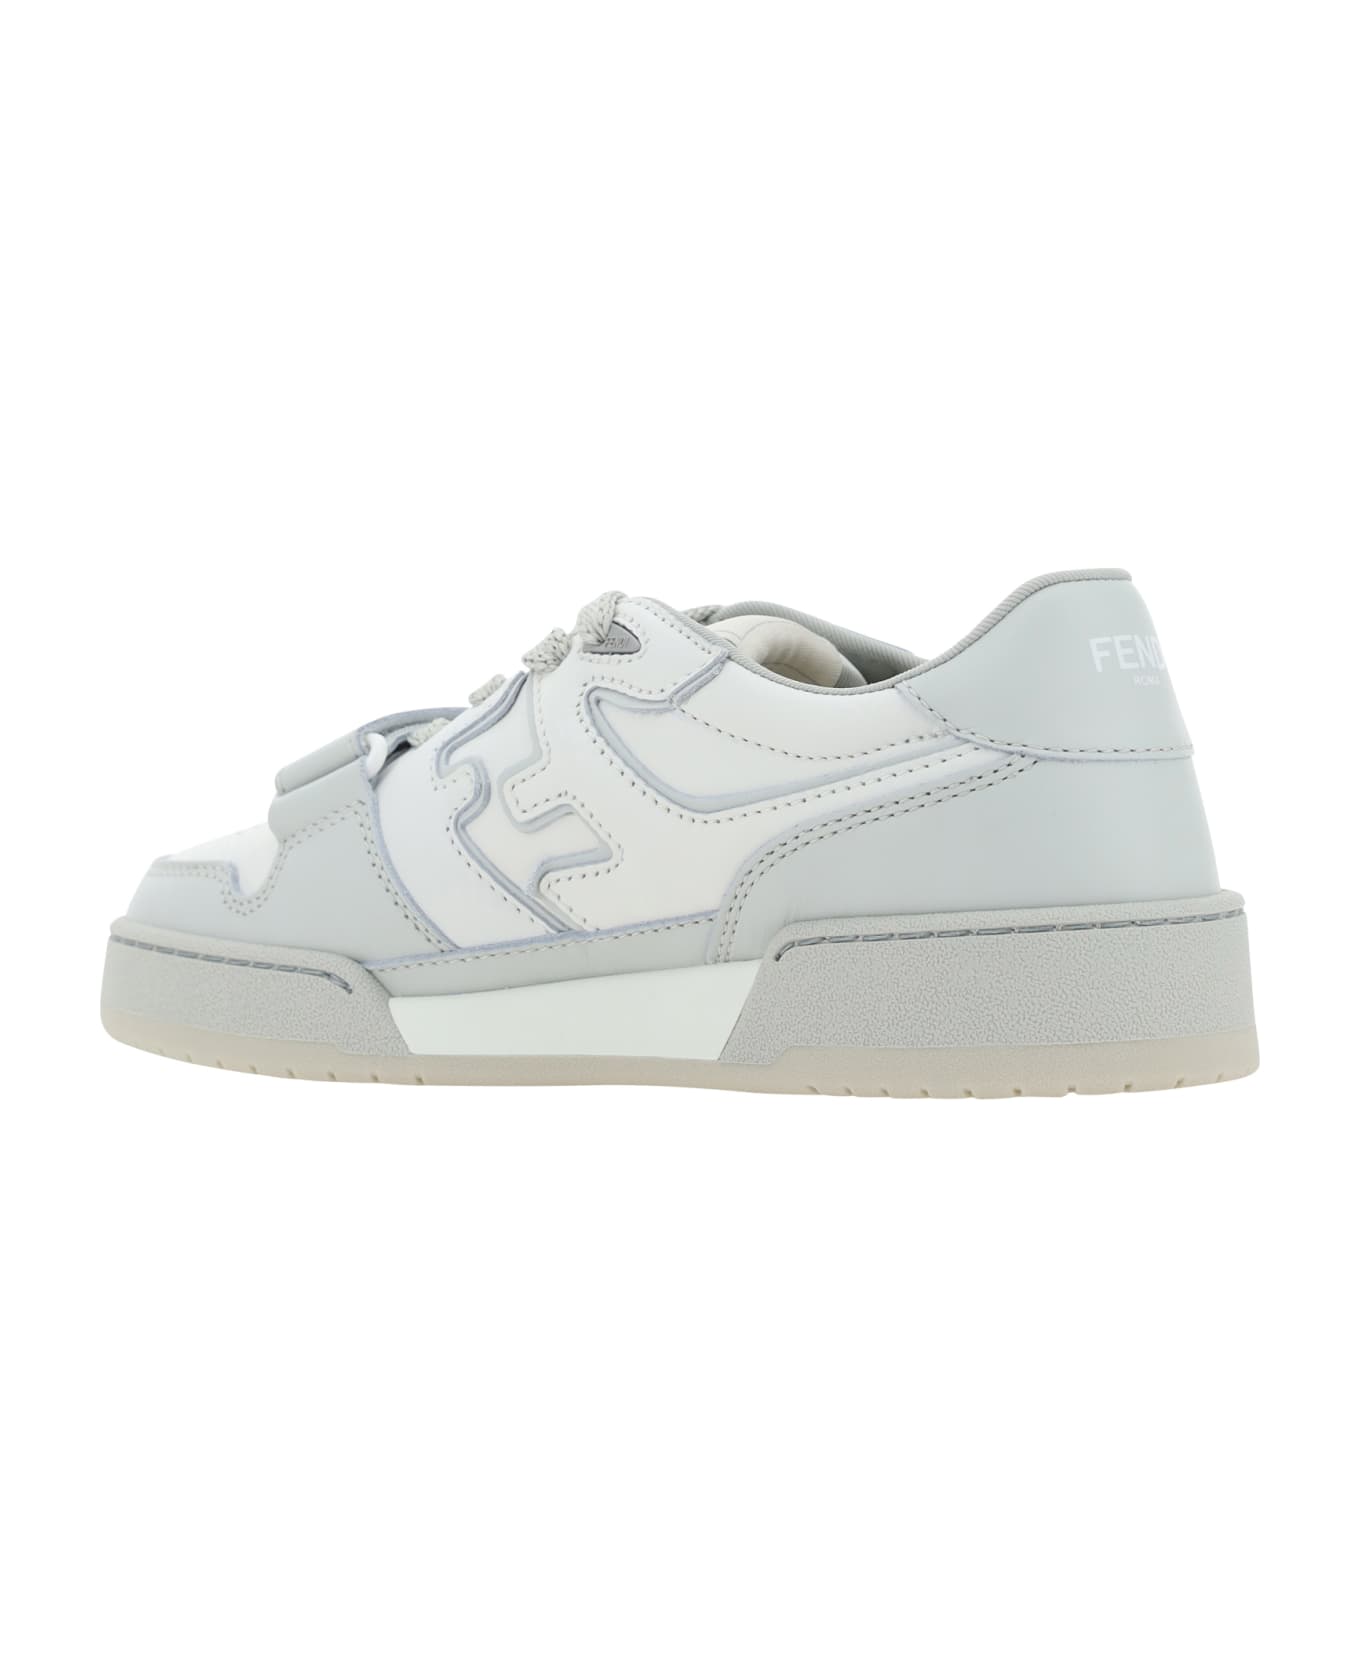 Fendi Match Sneakers - Grigio/white/grigio